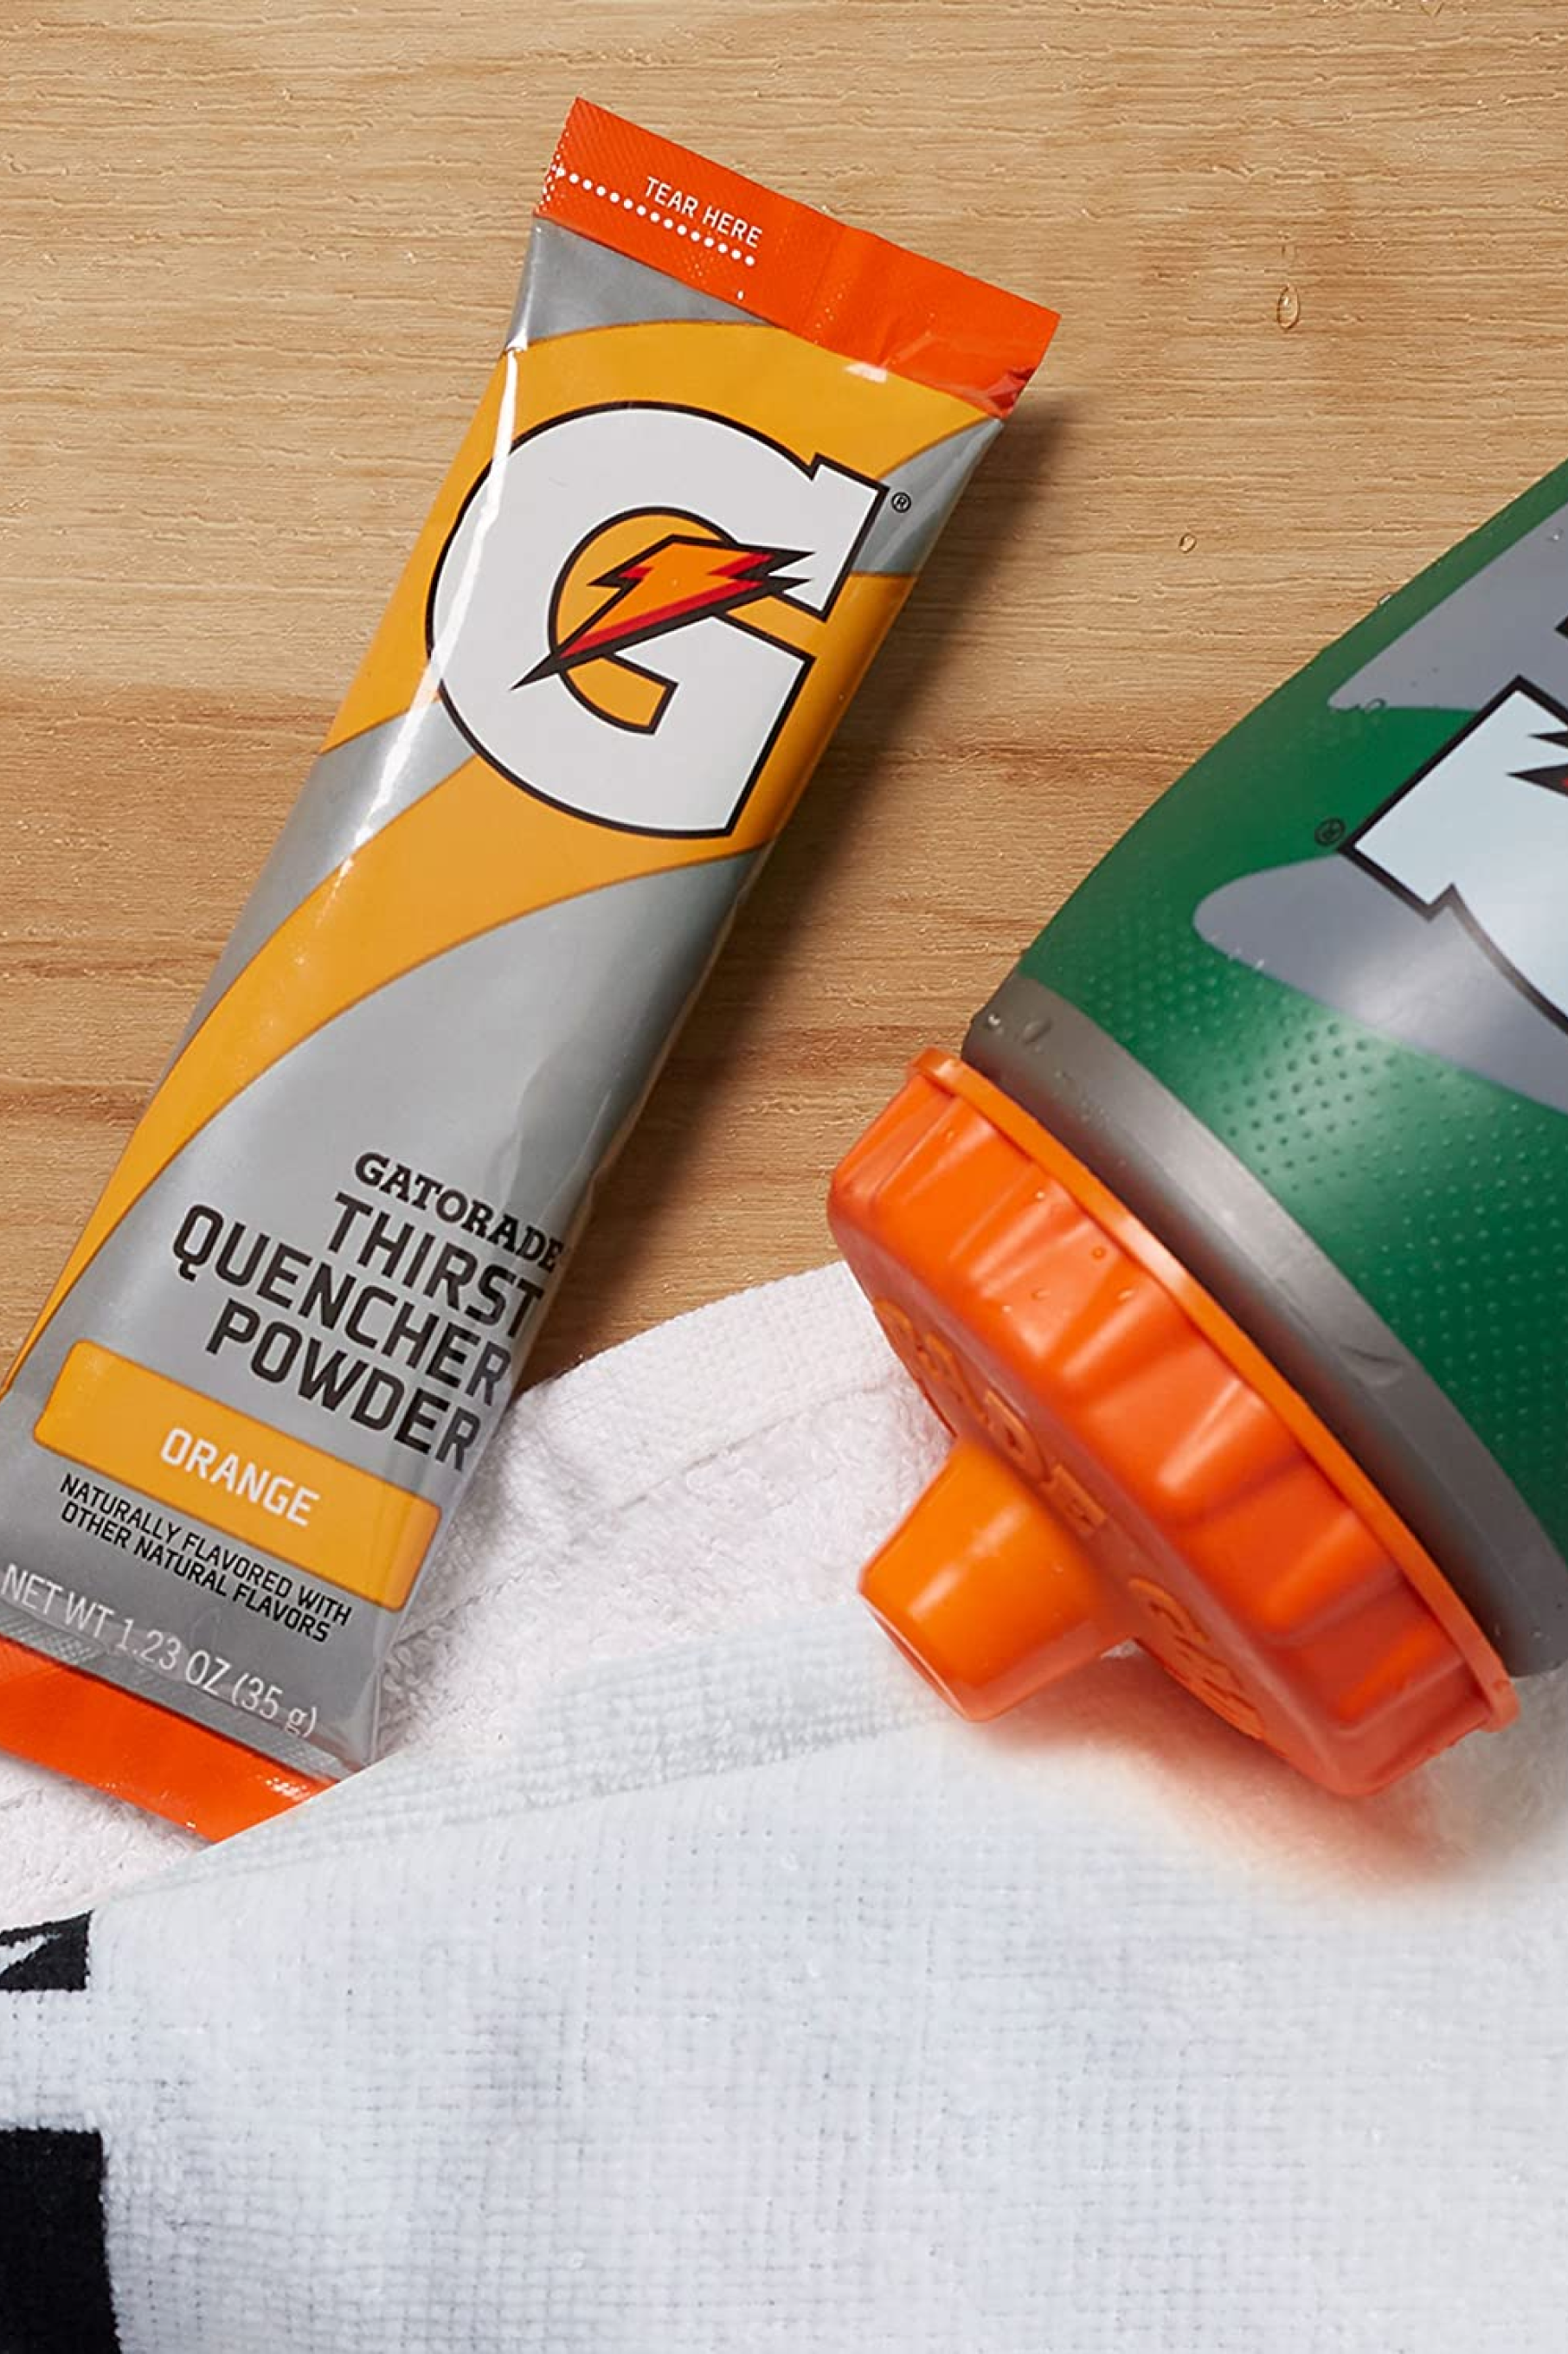 Gatorade Thirst Quencher Single Serve Powder Orange packet with Gx bottle